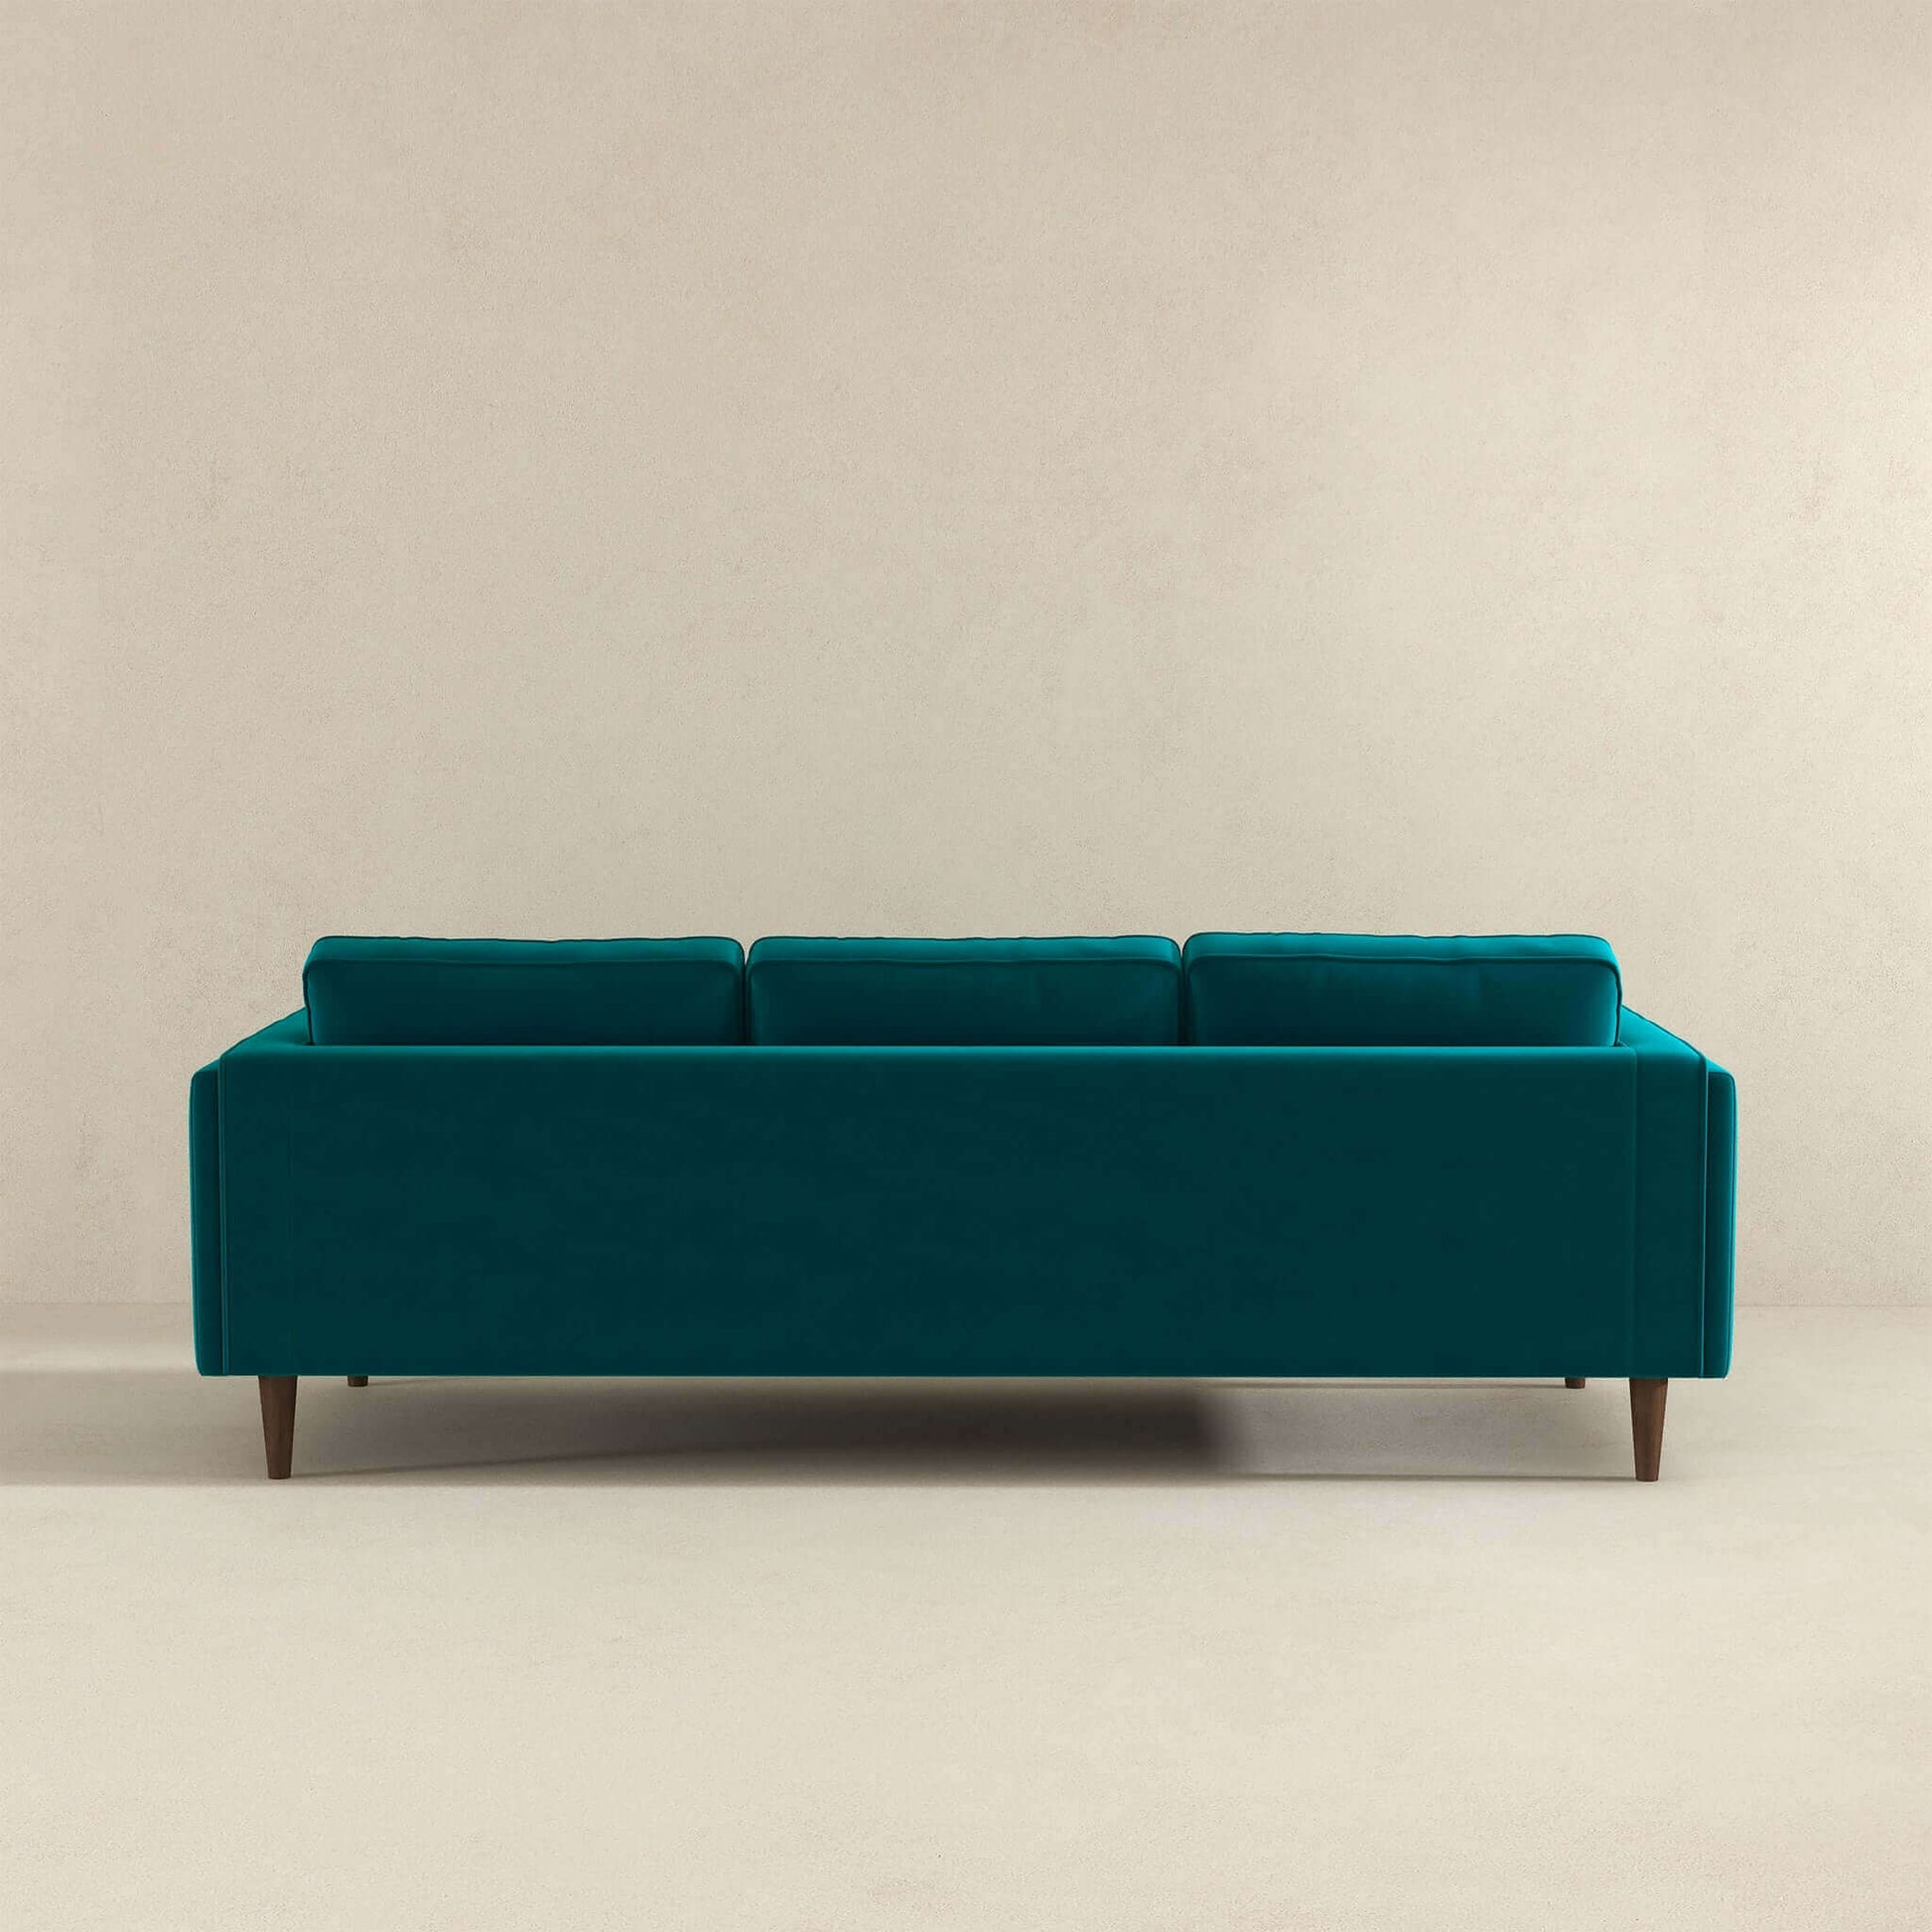 Amber Mid Century Modern Teal Velvet Sofa